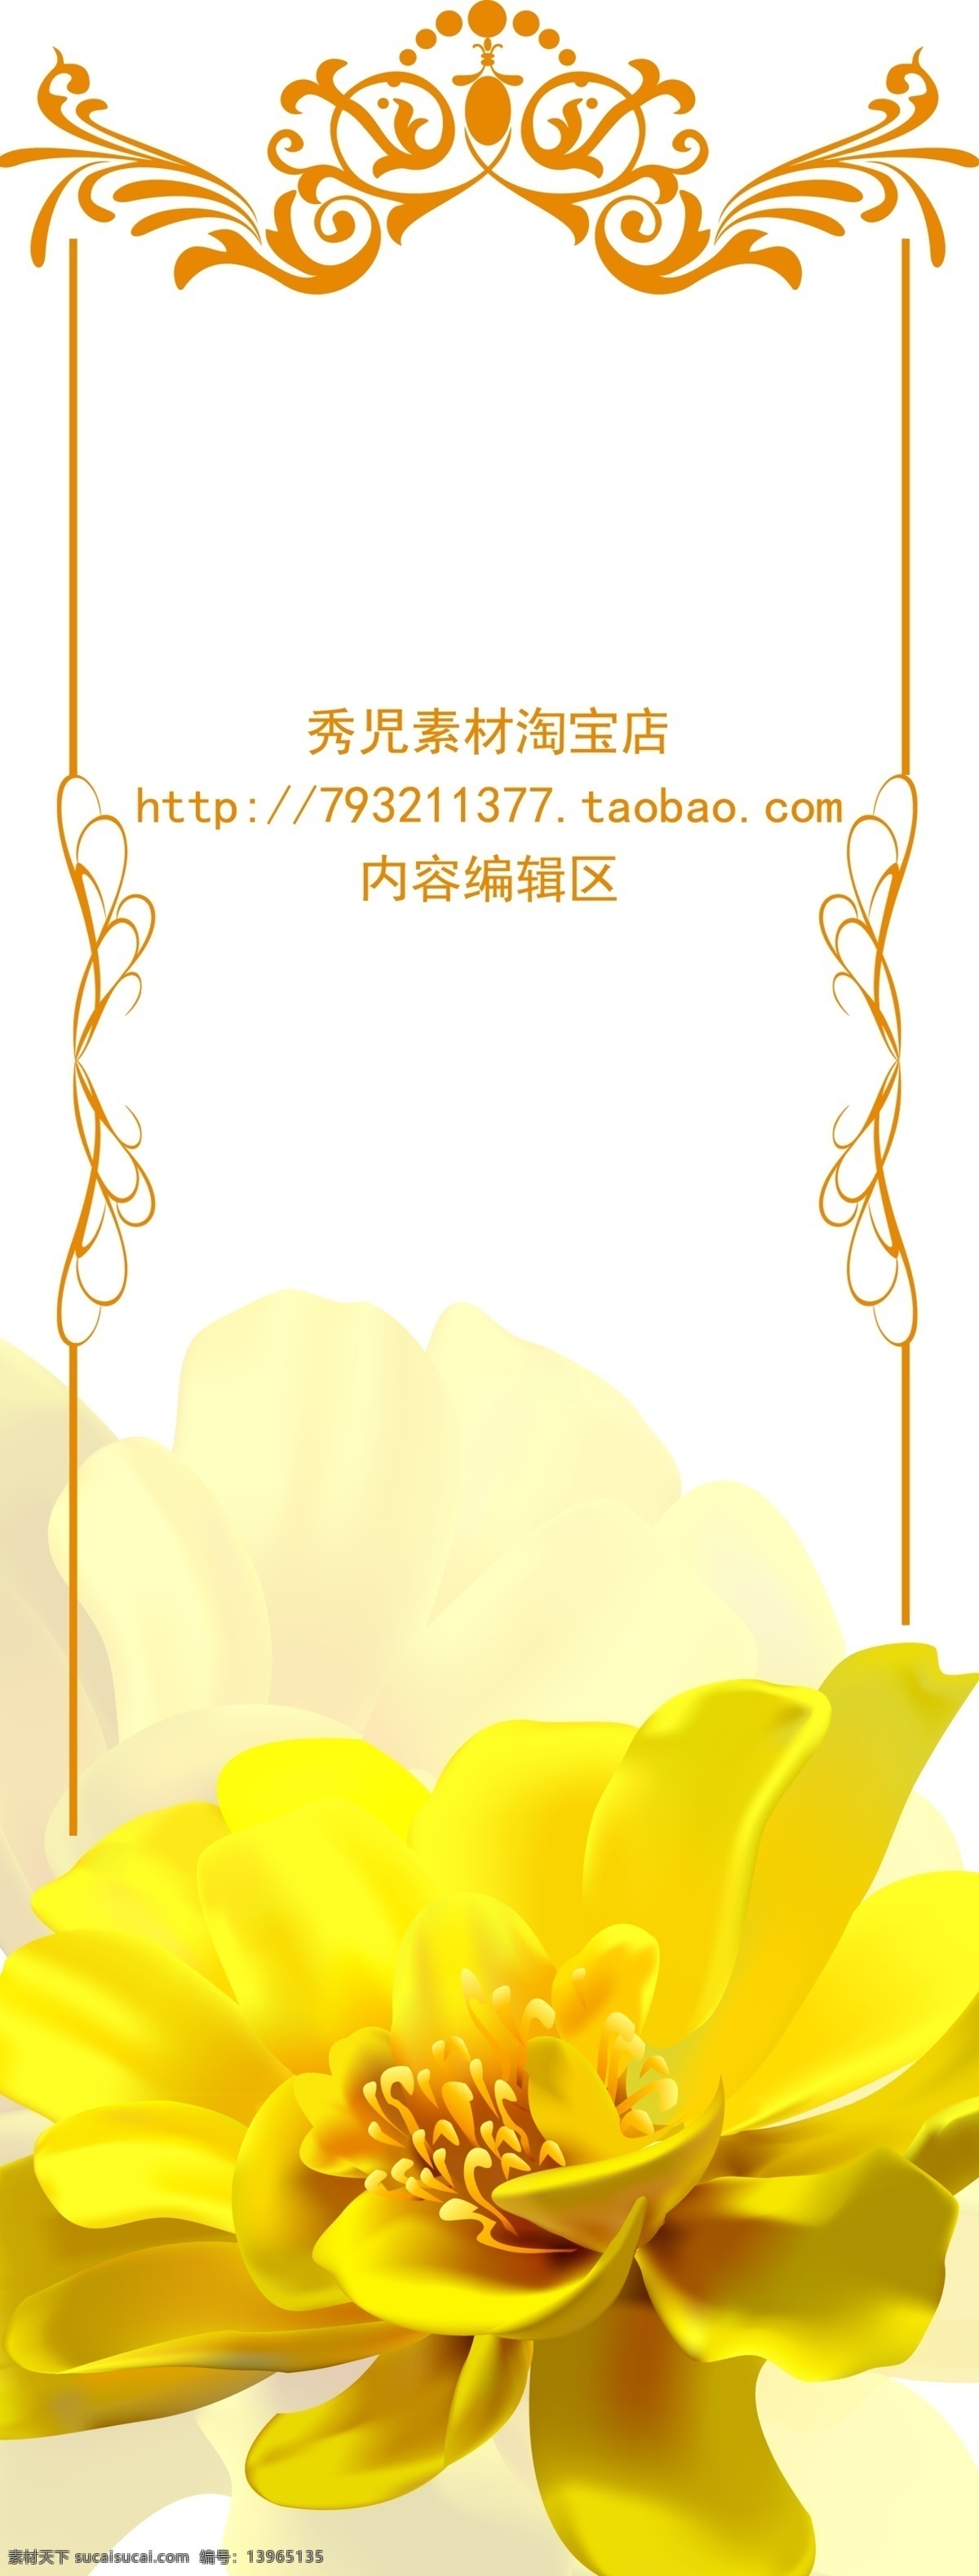 精美 黄色 花儿 展架 模板 画面 海报 精美黄色 黄色花儿 黄色玫瑰花 玫瑰花 精美展架 展架边框 边框 精美边框素材 边框素材 展架模板 展架模板设计 x展架 白色